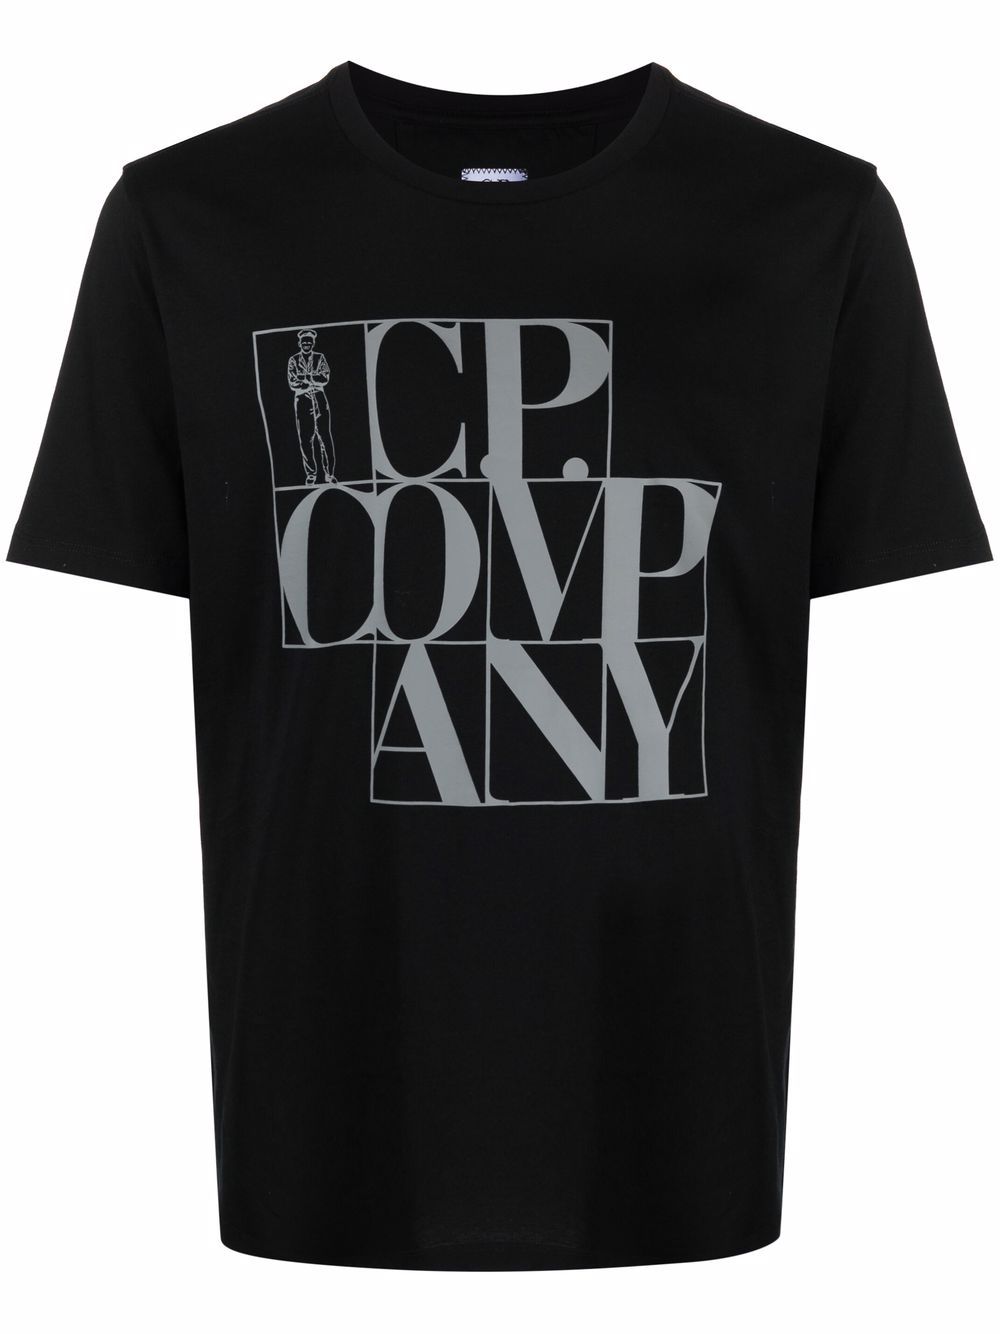 фото C.p. company футболка с графичным принтом